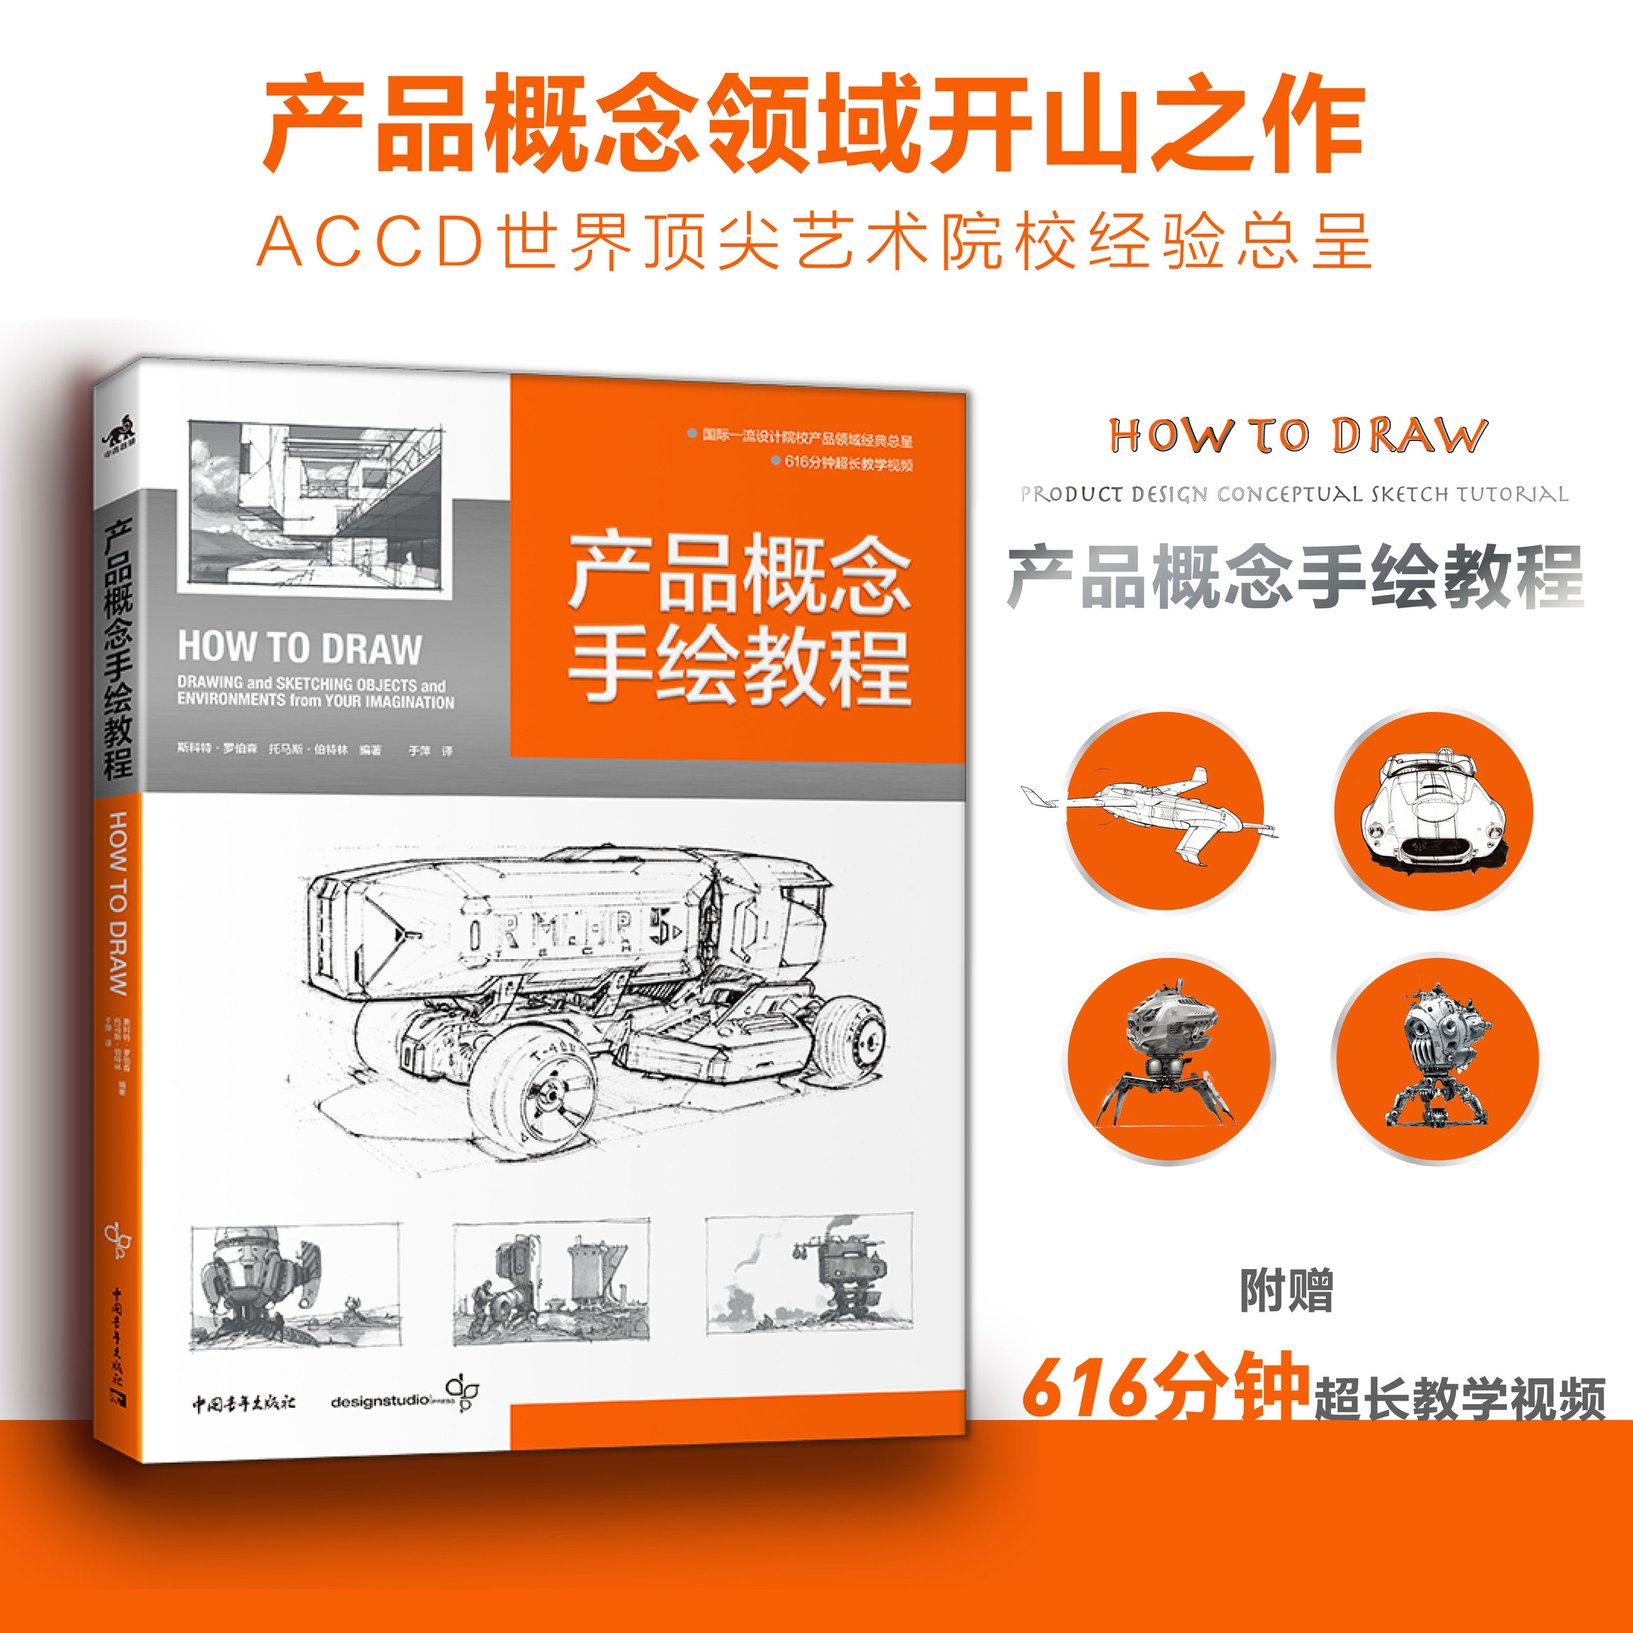 新书产品概念手绘教程 国际工业设计经典教程600分钟超长教学视频产品设计工业设计模型设计视觉设计书how to draw中文版出版